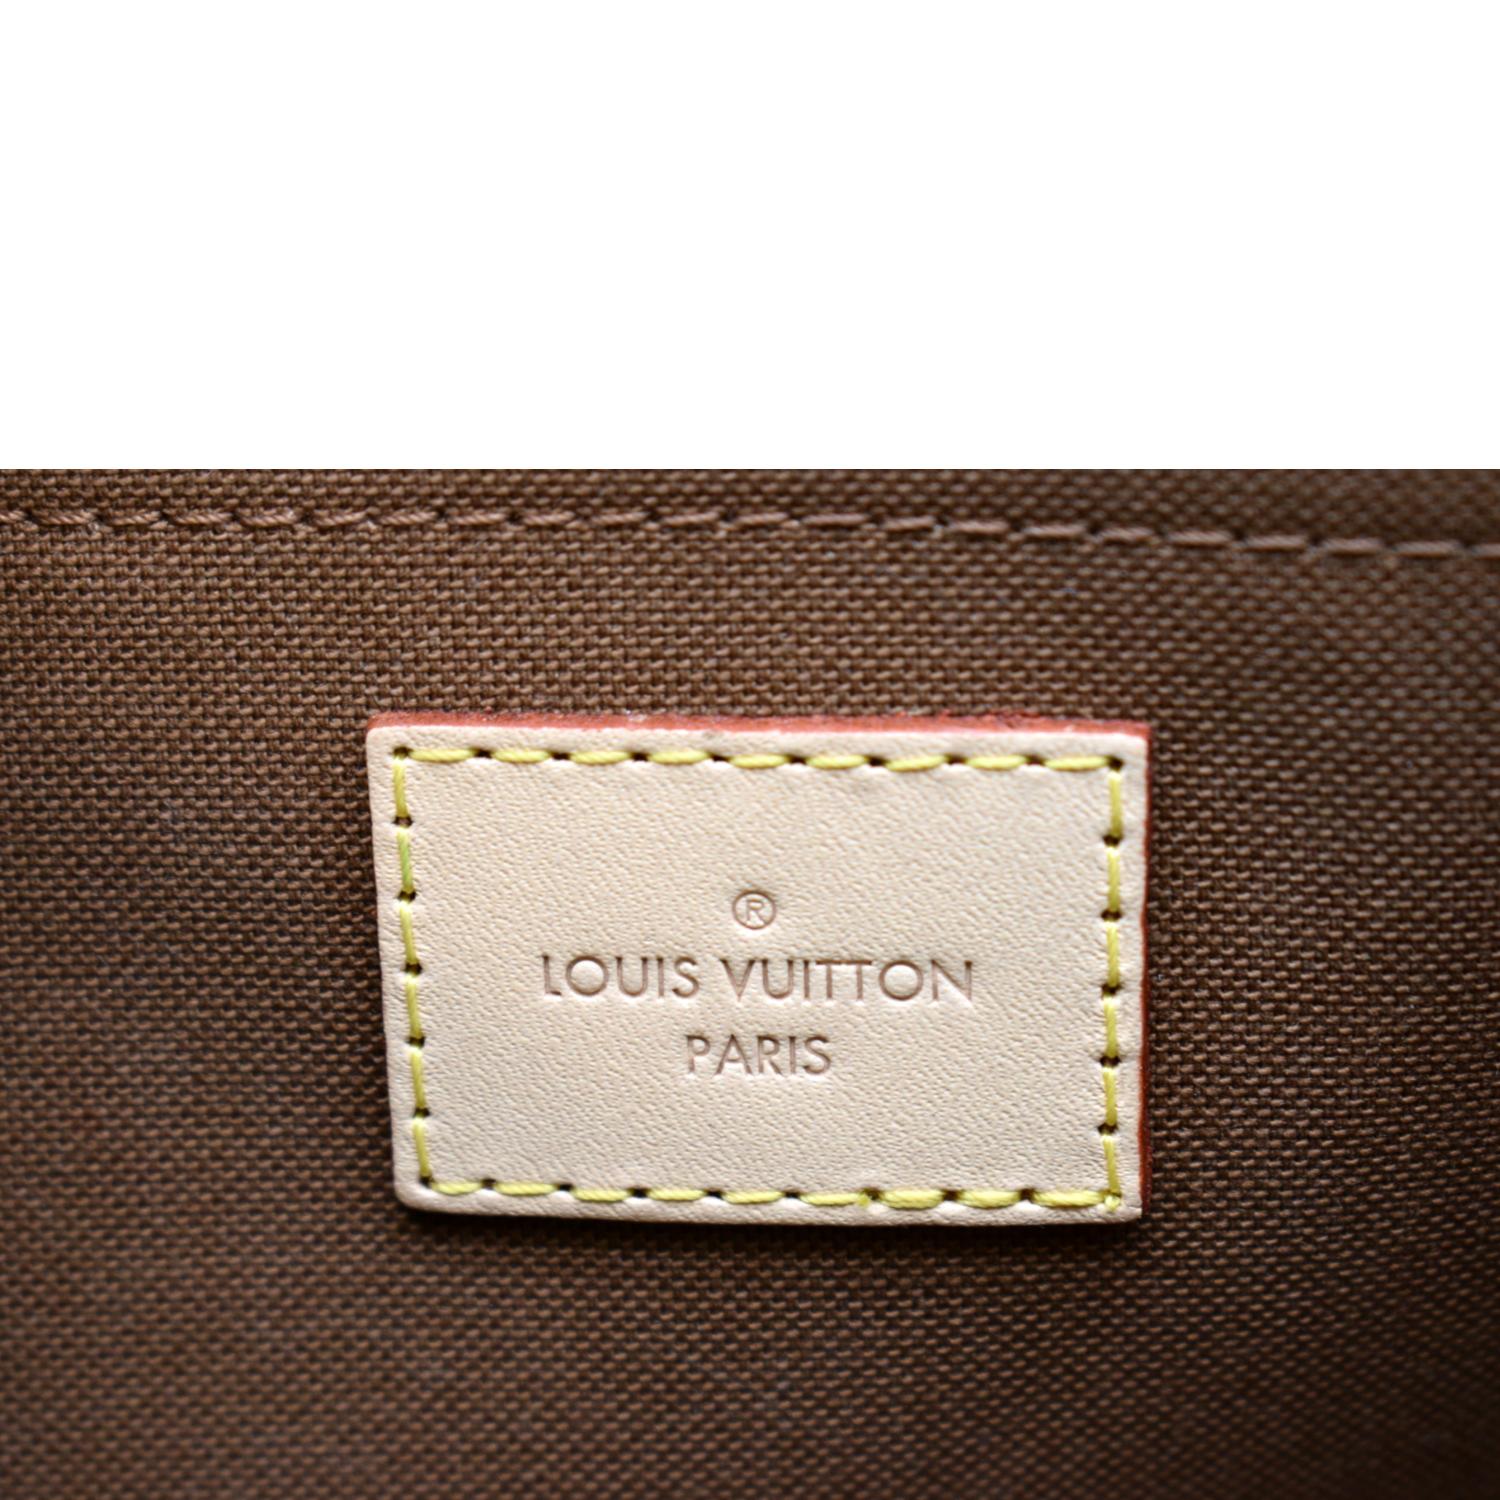 💥Louis Vuitton Dust Bag Bundle💥